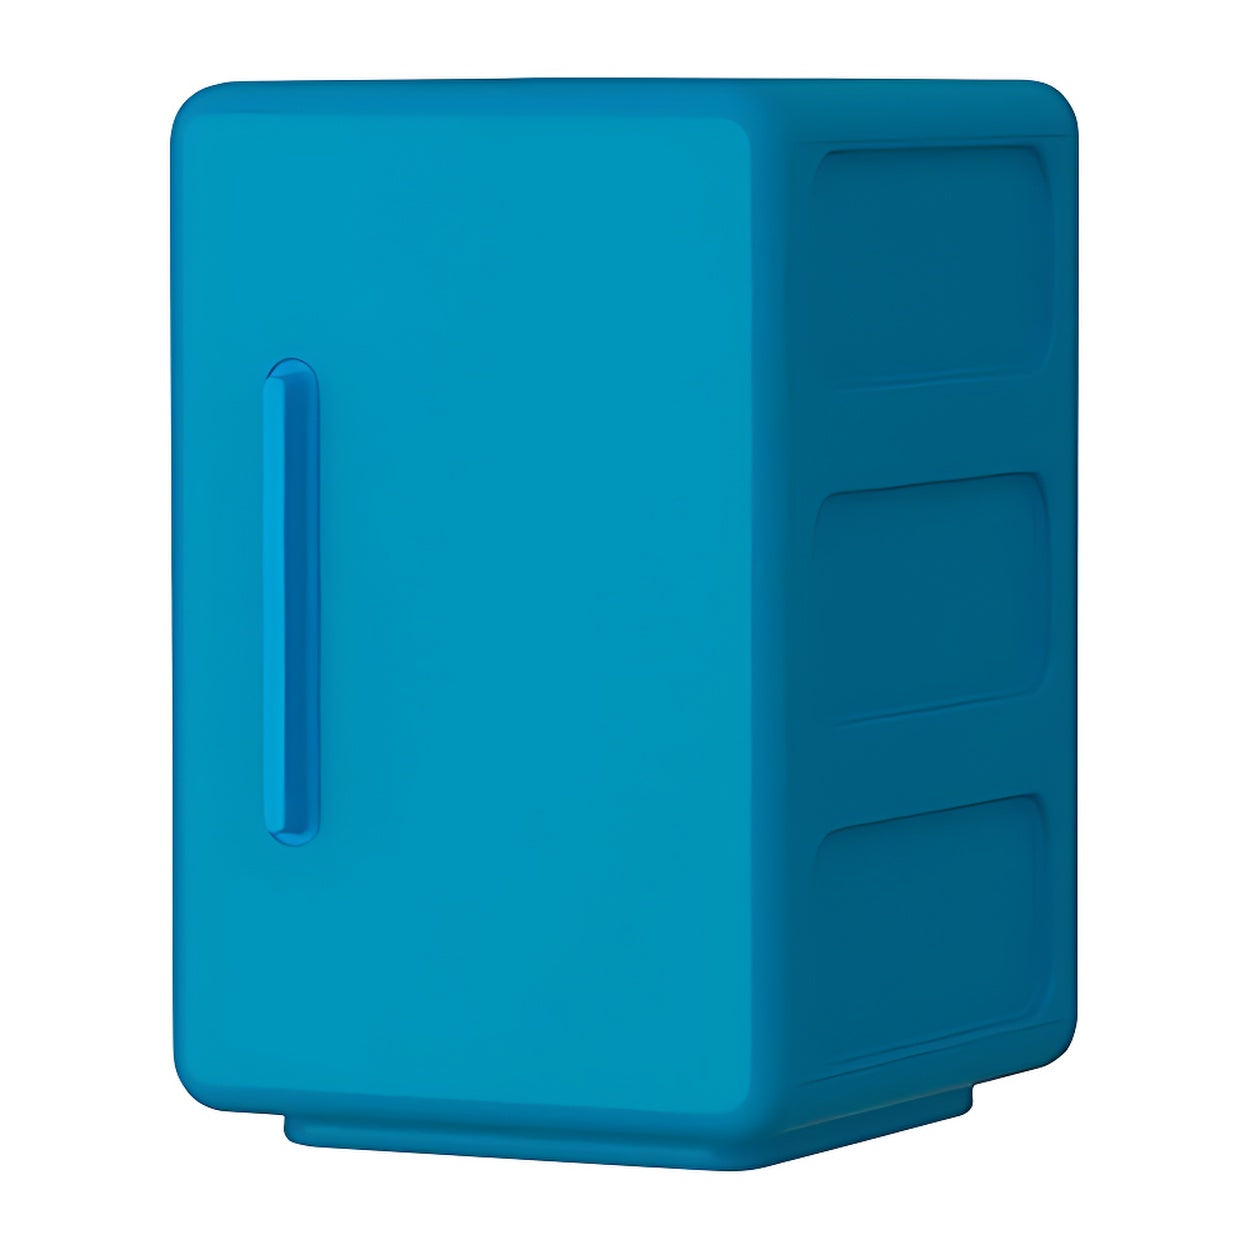 Ikea Lejen Cabinet, Blue